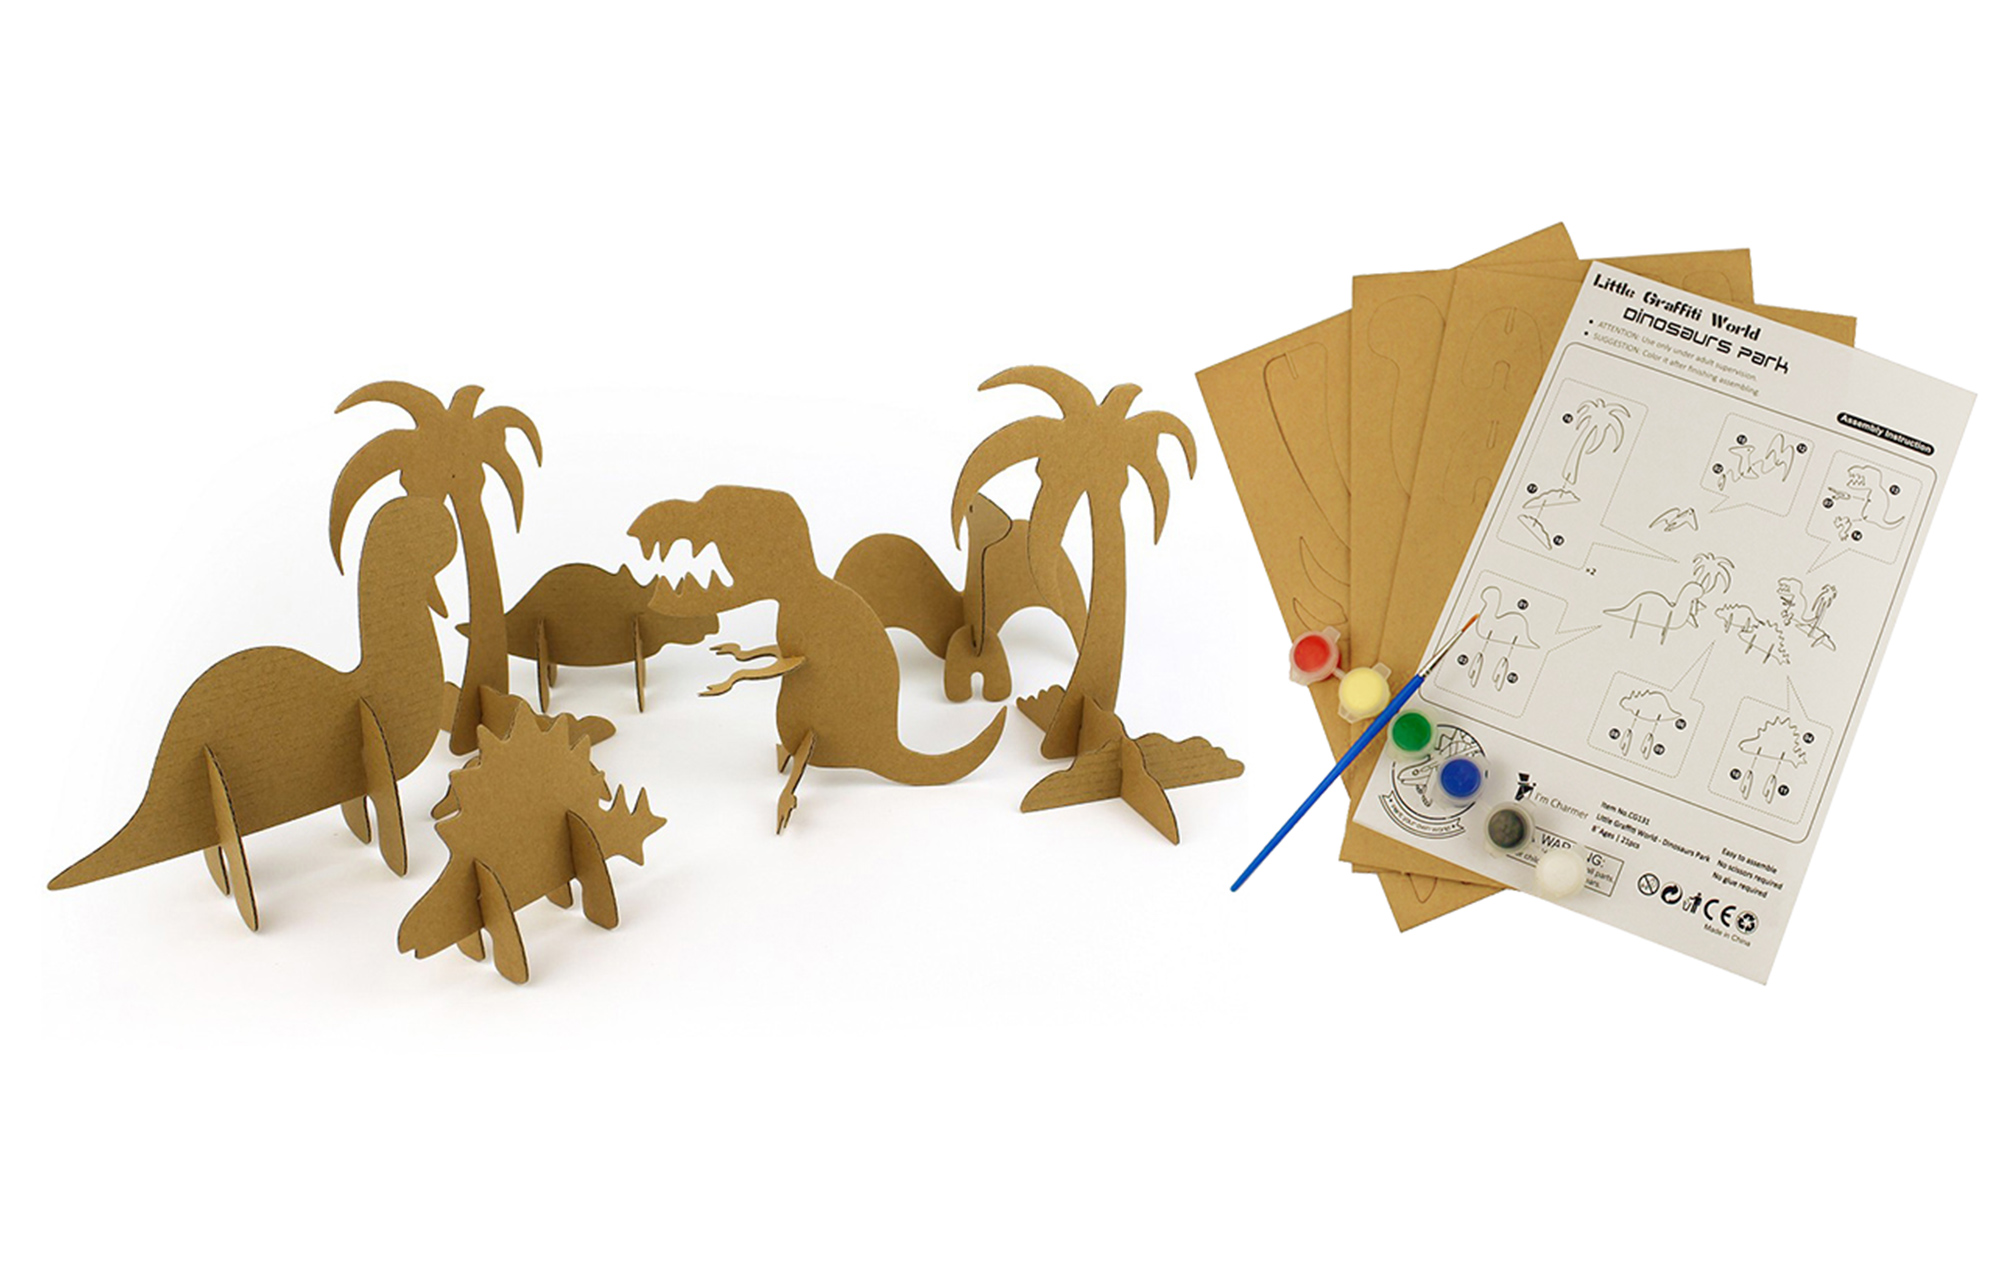 Динозавр сериясе 3D табышмак кәгазе моделе CG131 җыю һәм дудлинг өчен балалар өчен (2)